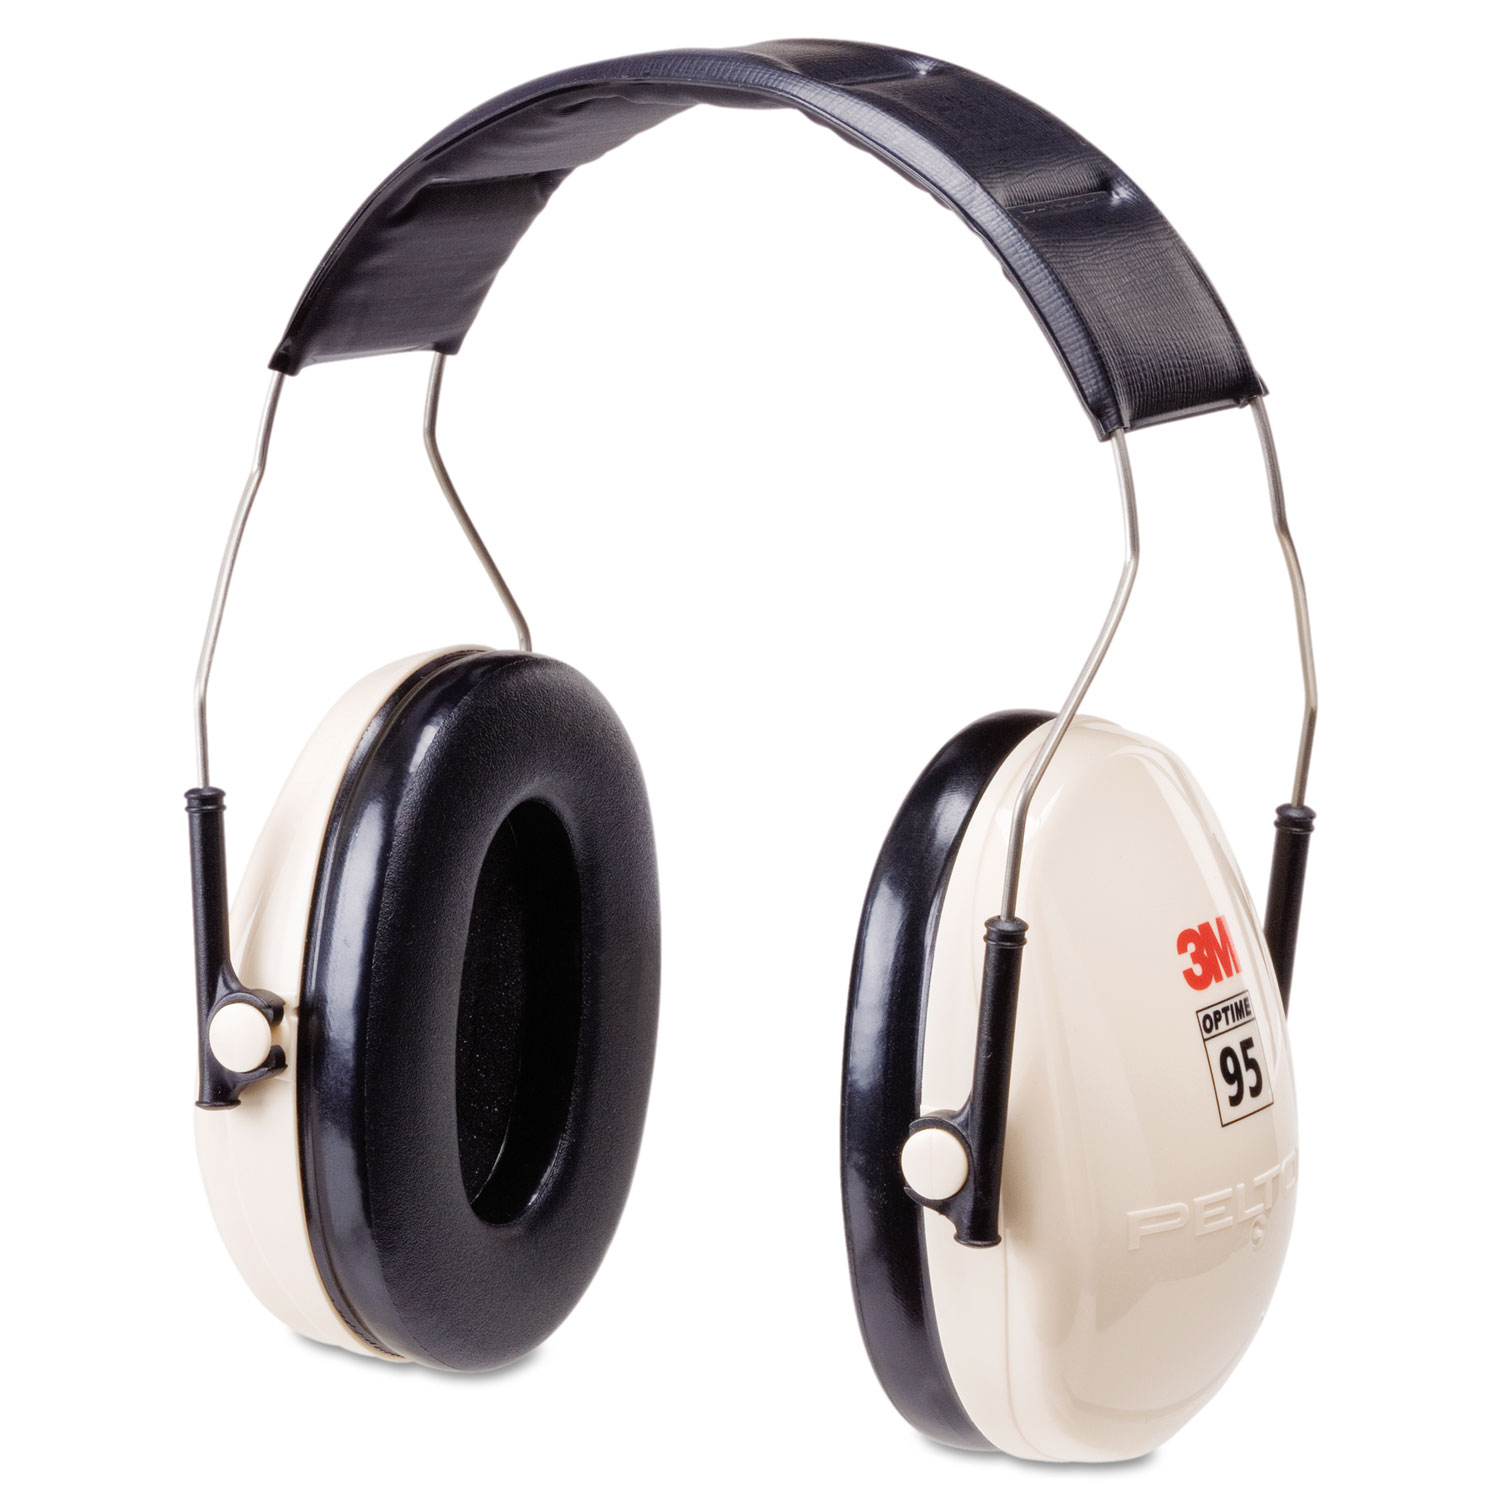  3M H6F/V PELTOR OPTIME 95 Low-Profile Folding Ear Muff H6f/V (MMMH6FV) 